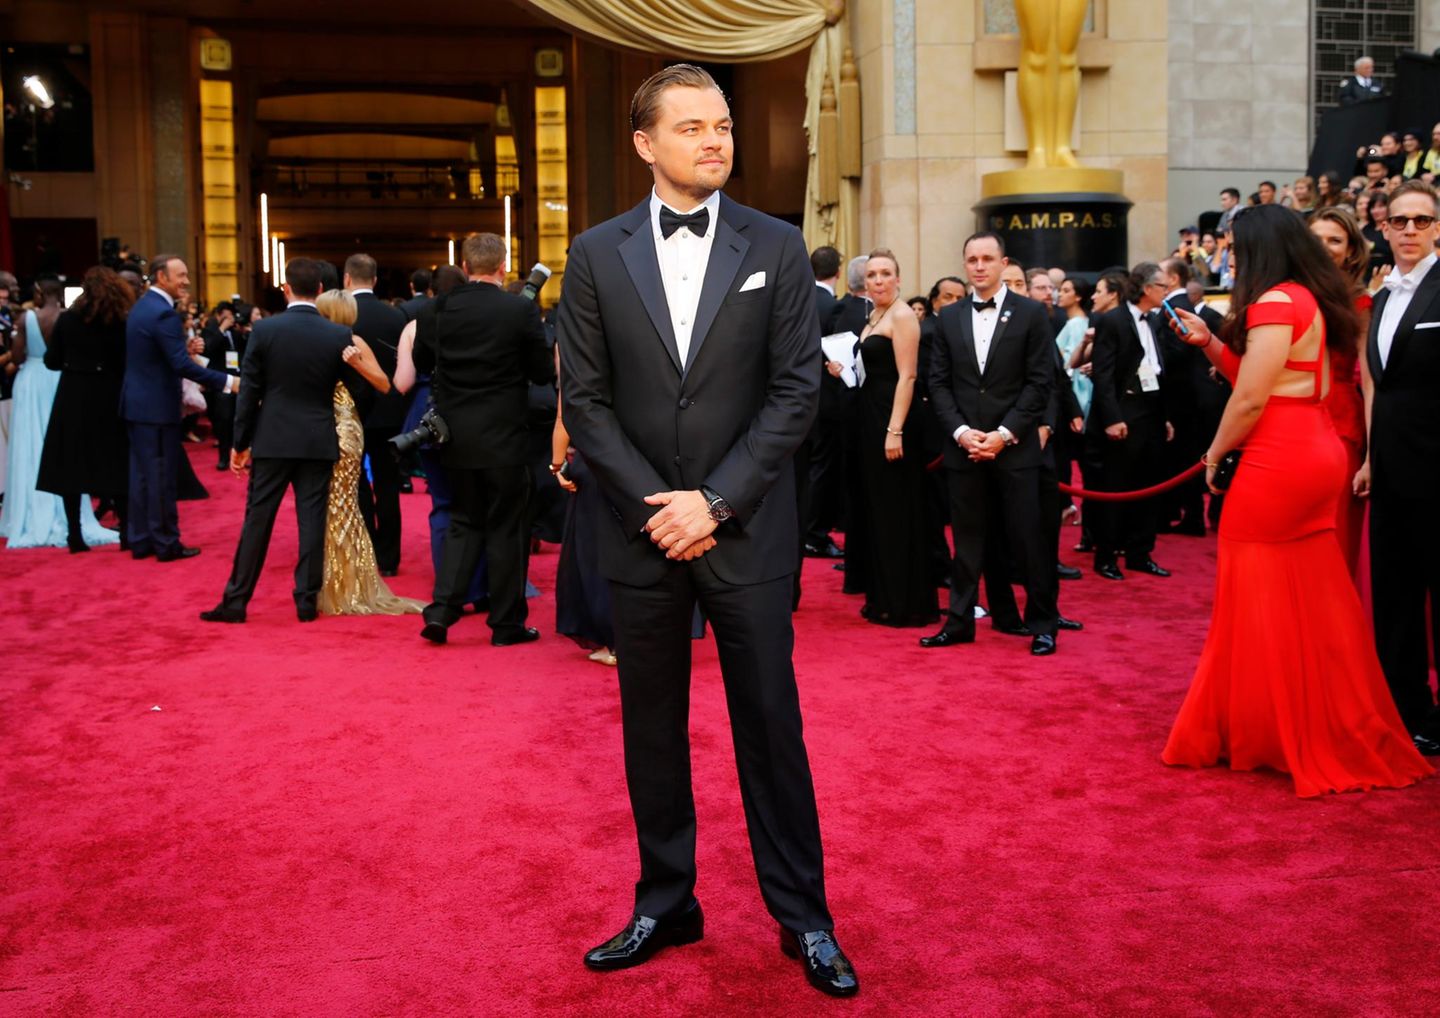 Leonardo DiCaprio - 5 Nominierungen  Fünf Mal war Leonardo DiCaprio schon nominiert. 2014 steht der Schauspieler noch voller Hoffnung, endlich den Goldjungen für seine Leistungen im Film "The Wolf of Wall Street" abräumen zu können, auf dem roten Teppich. Leider geht er auch bei seiner fünften Nominierung leer aus.